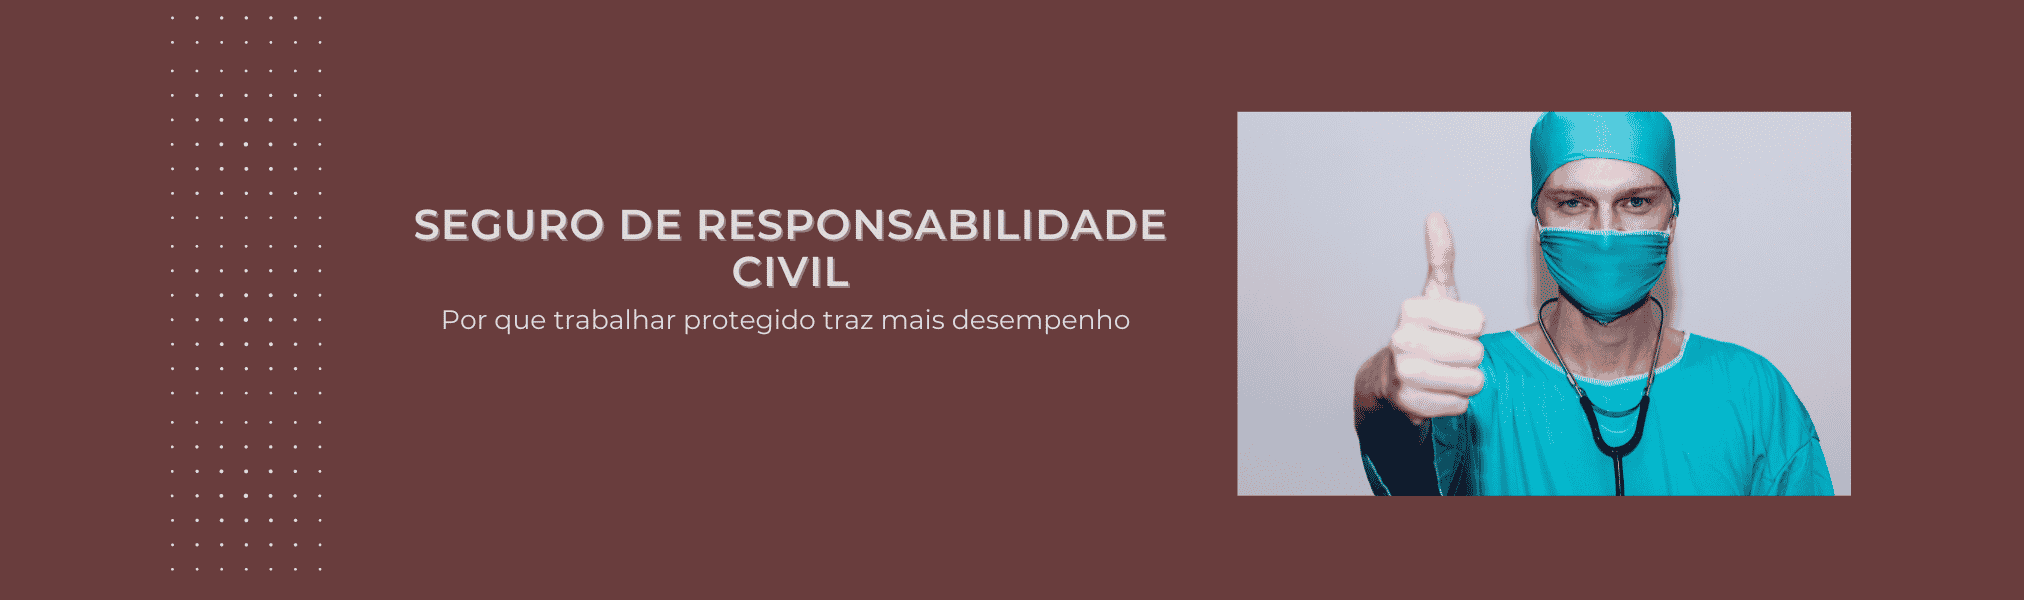 Banner Seguro de Responsabilidade Civil